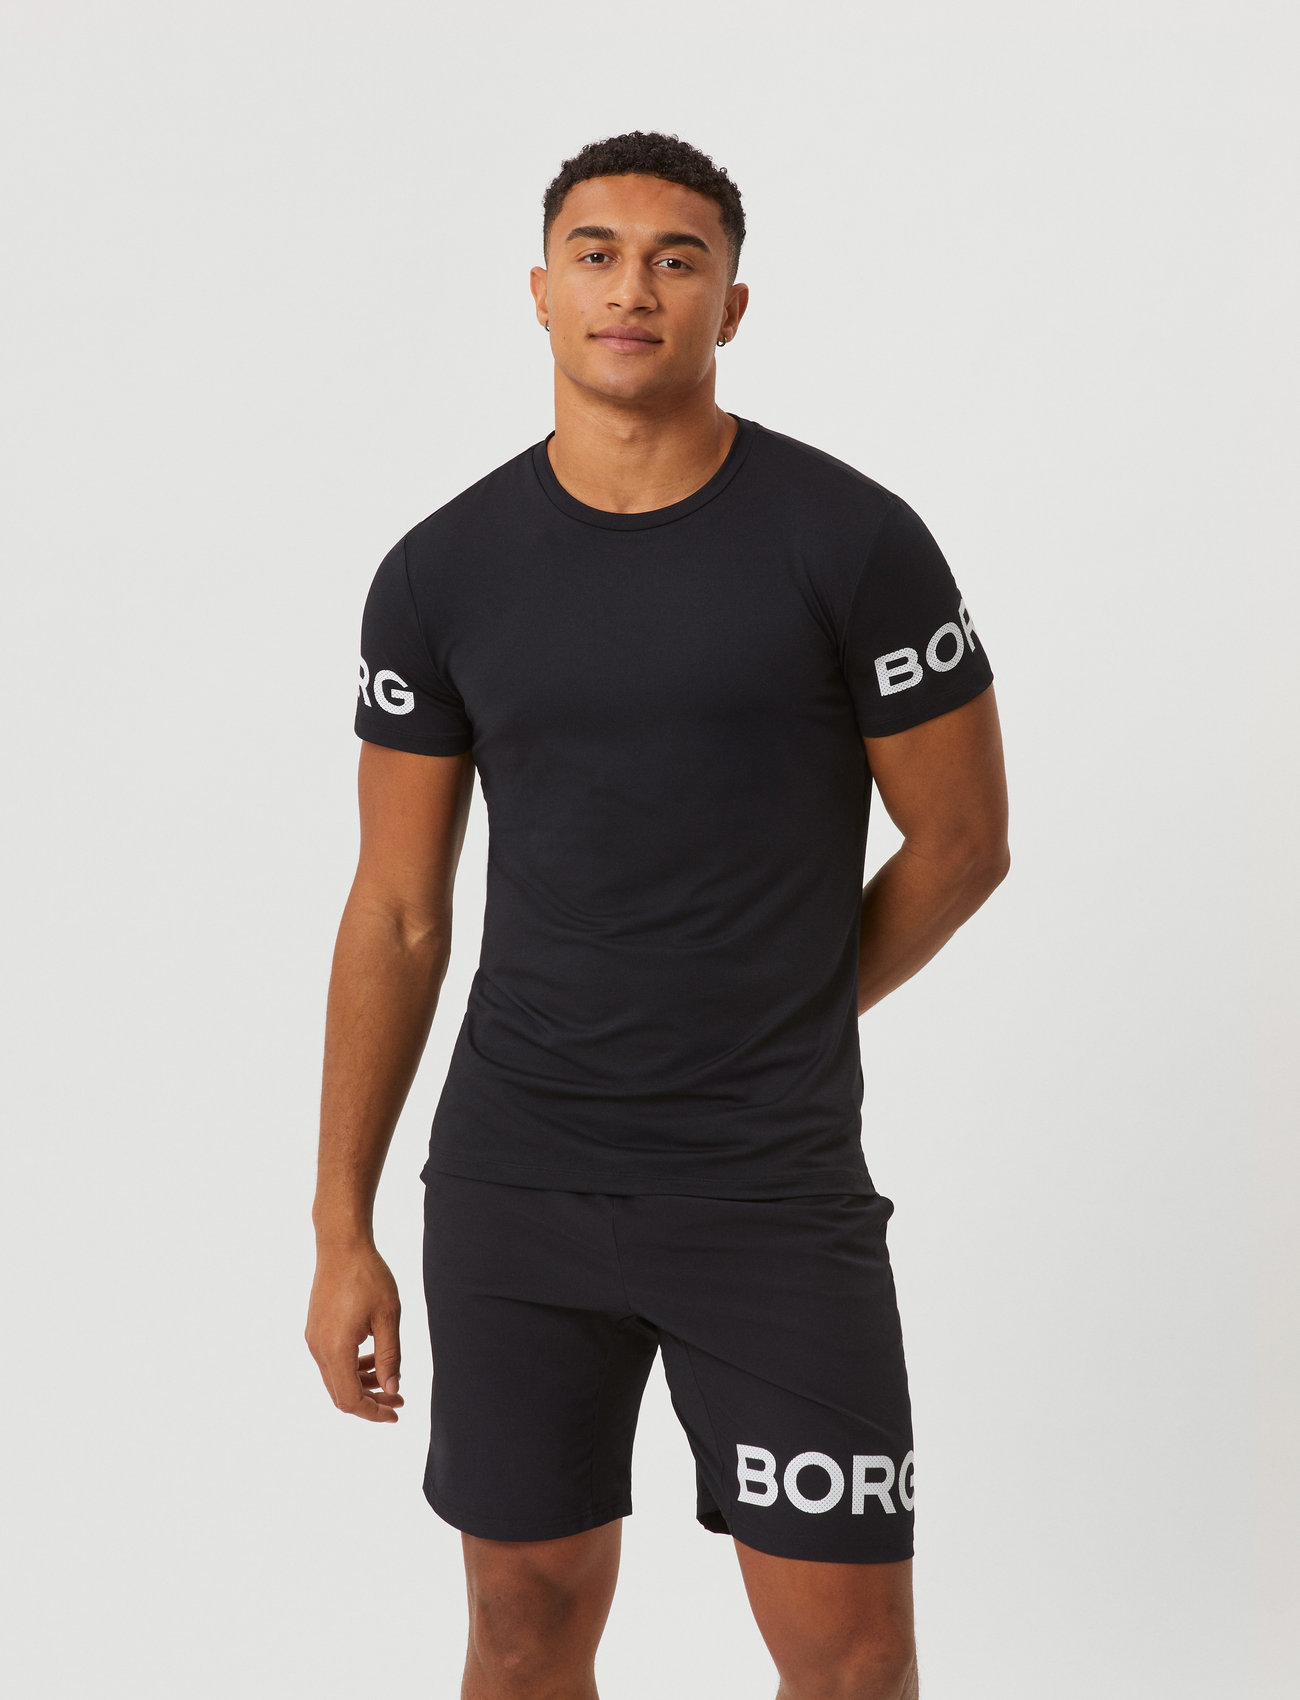 Björn Borg - BORG T-SHIRT - t-shirts - black beauty - 0